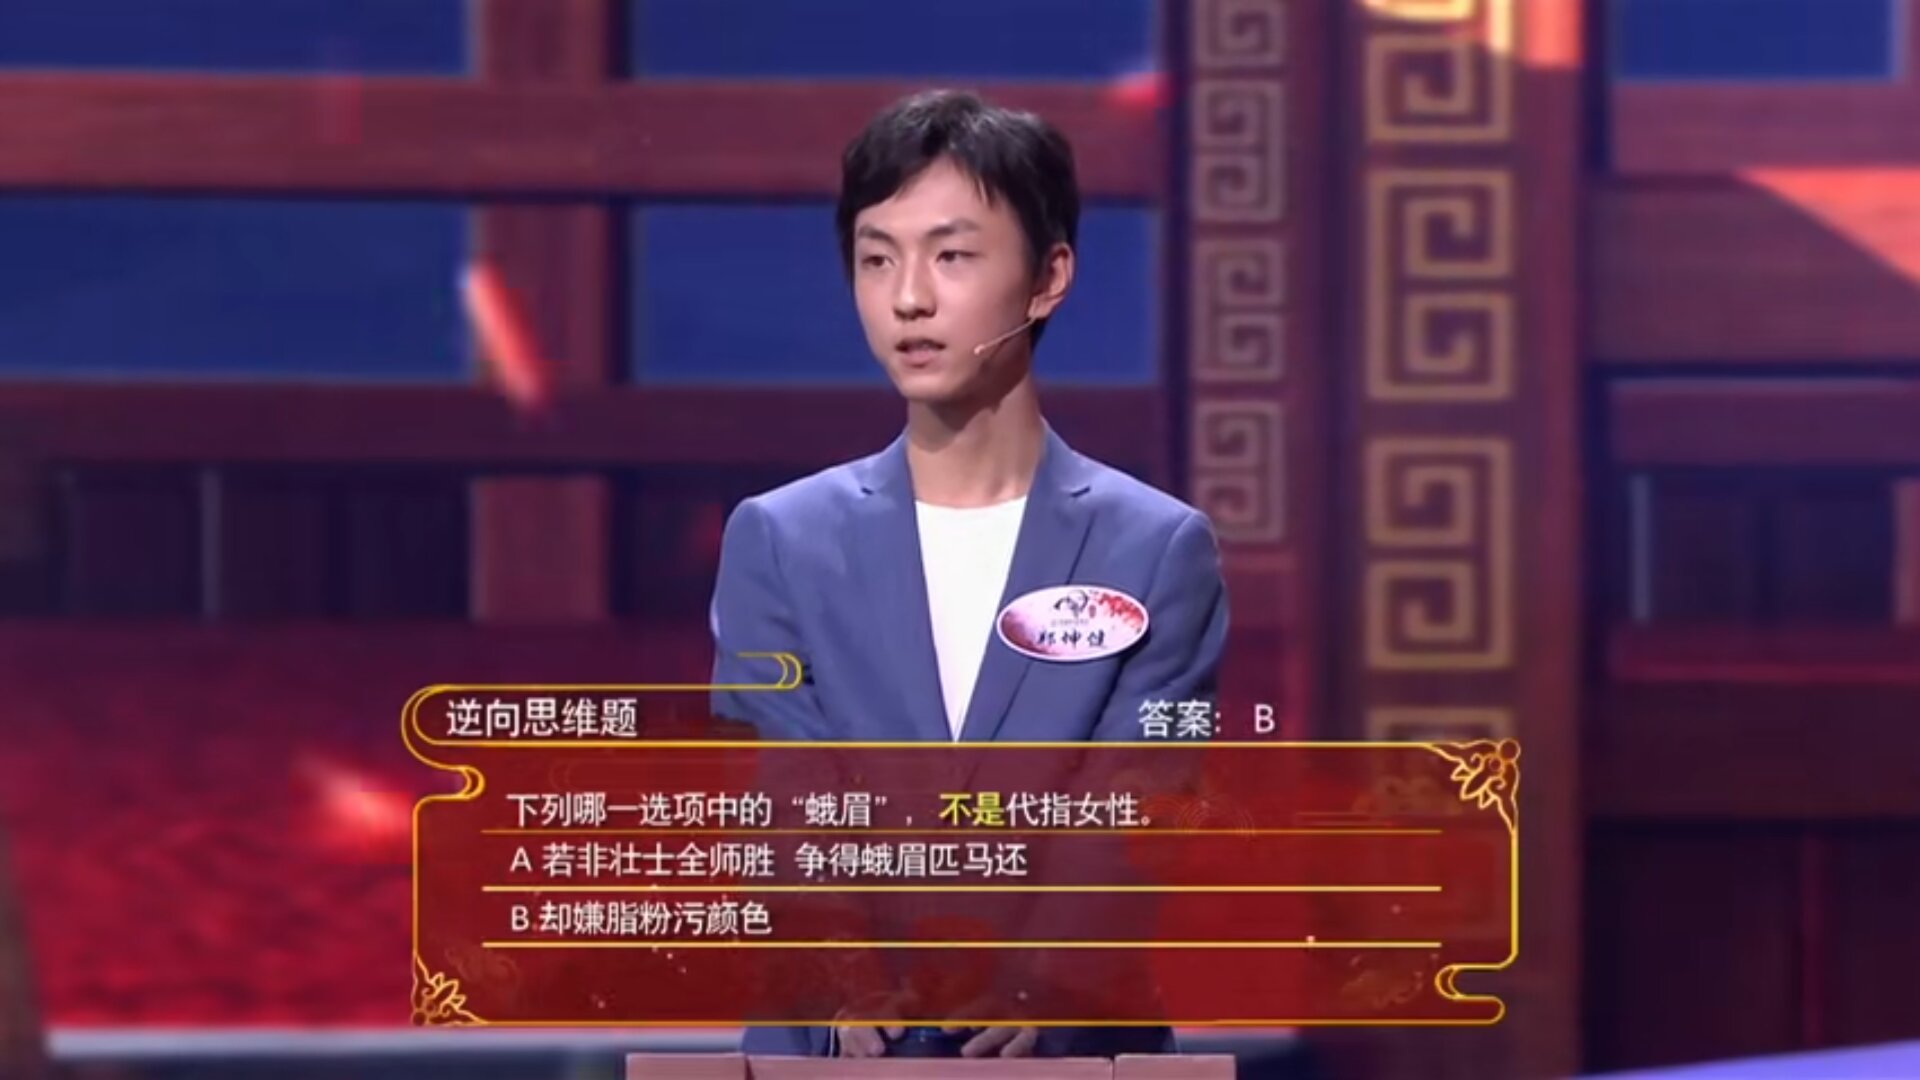 能否问问《中国诗词大会》中，你对哪位选手感触最深？